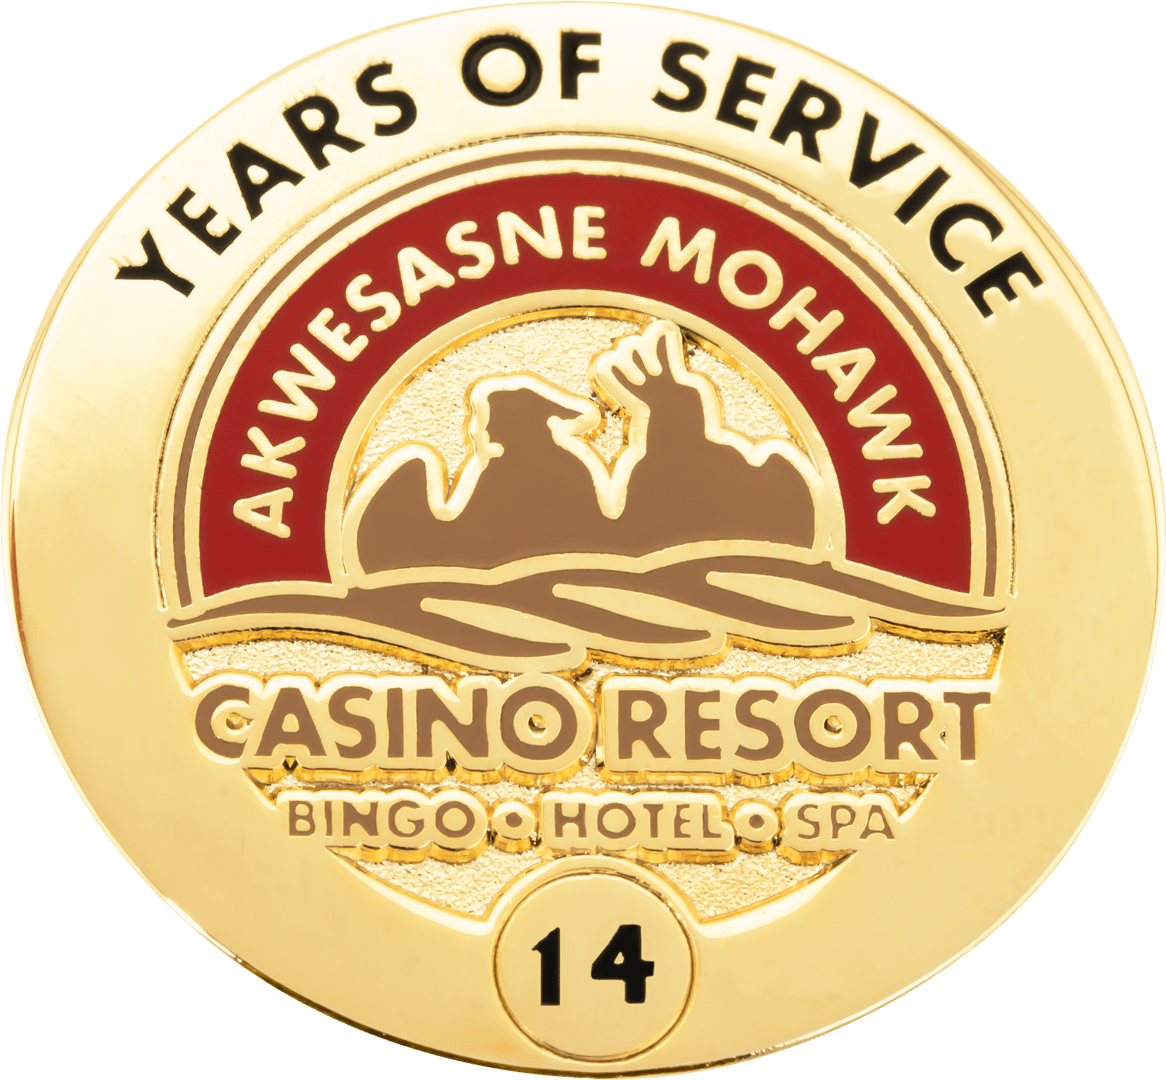 Akwesasne Mohawk Casino - 14 Years